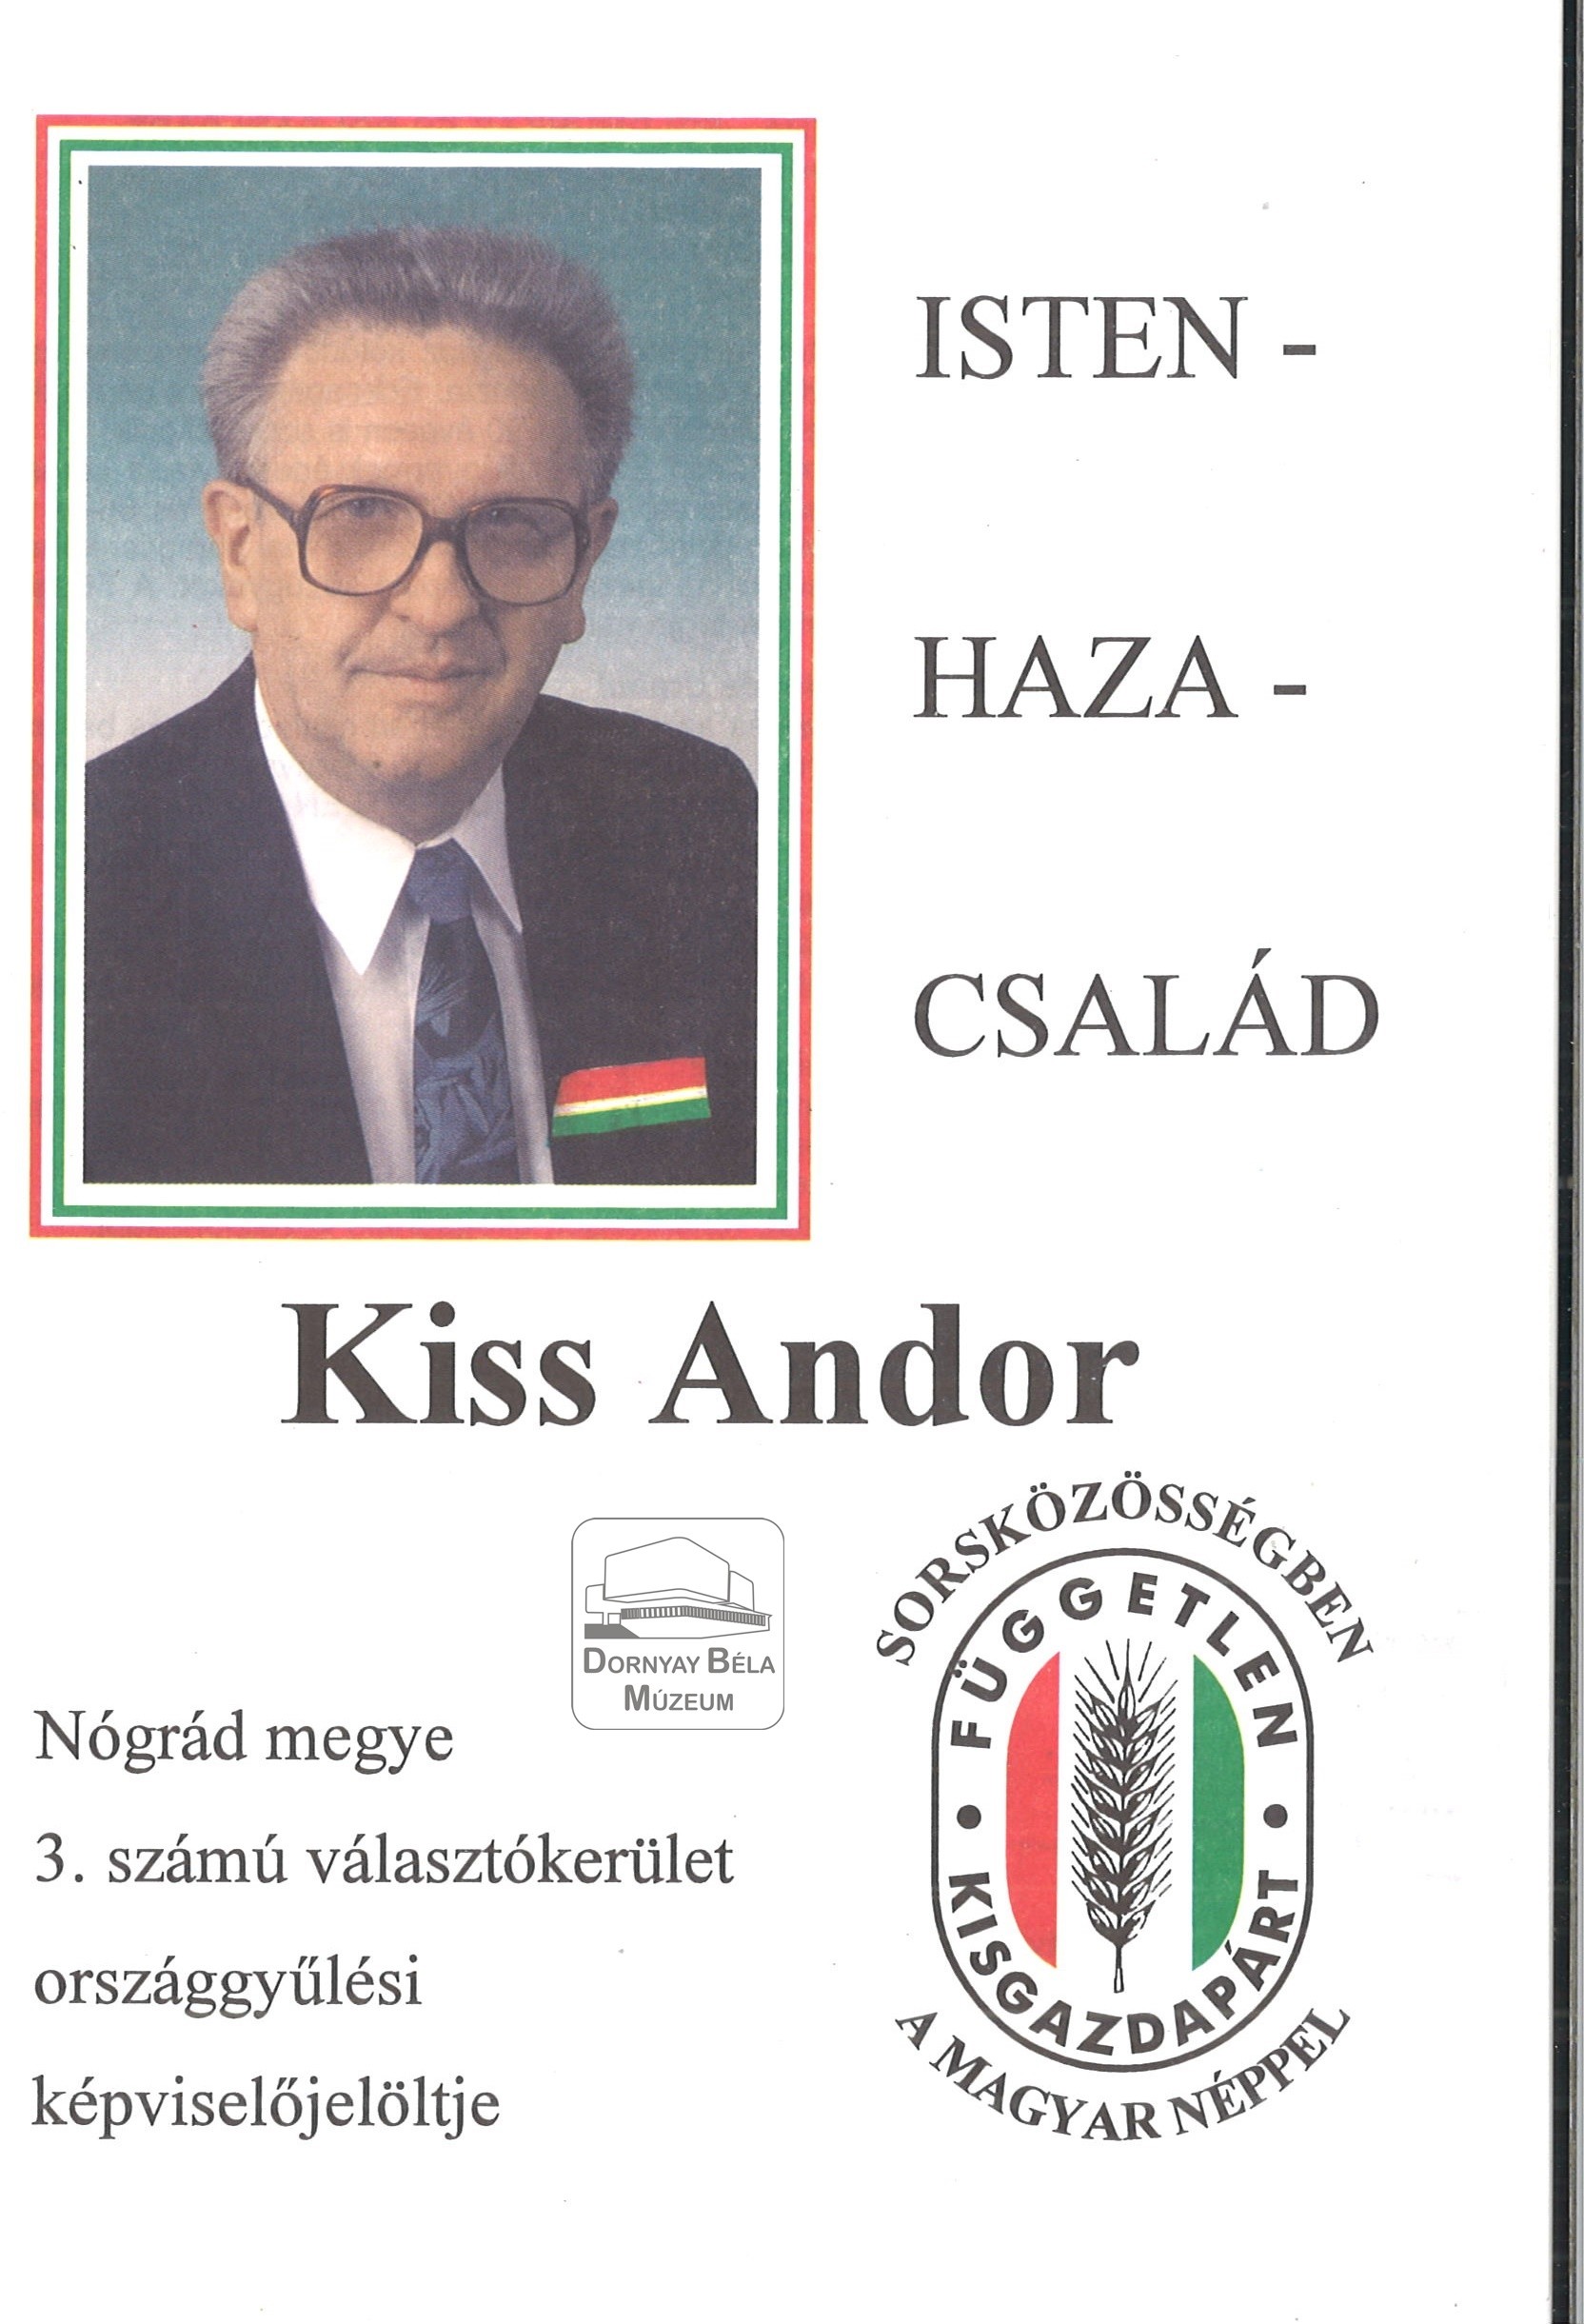 Kiss Andor az FKGP képviselőjelöltje a 3.sz. Választókerületben (Dornyay Béla Múzeum, Salgótarján CC BY-NC-SA)